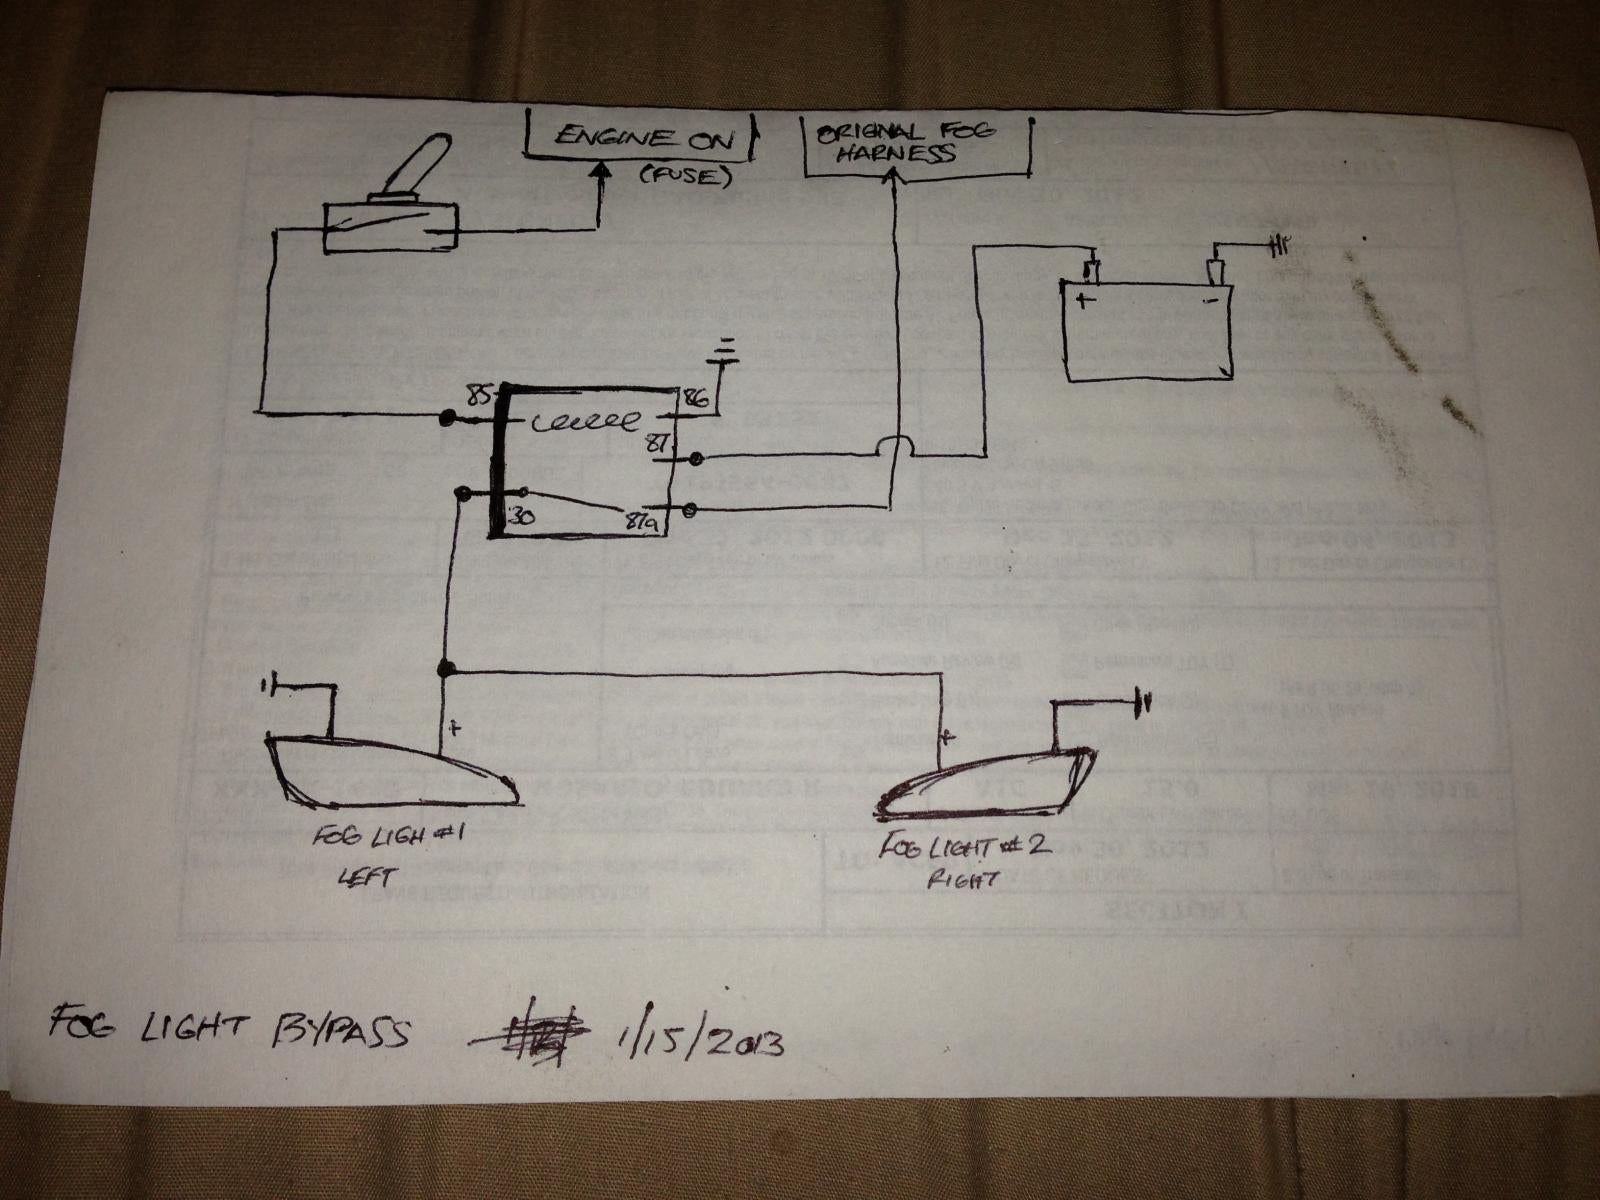 fl7022 fog lights wiring diagram